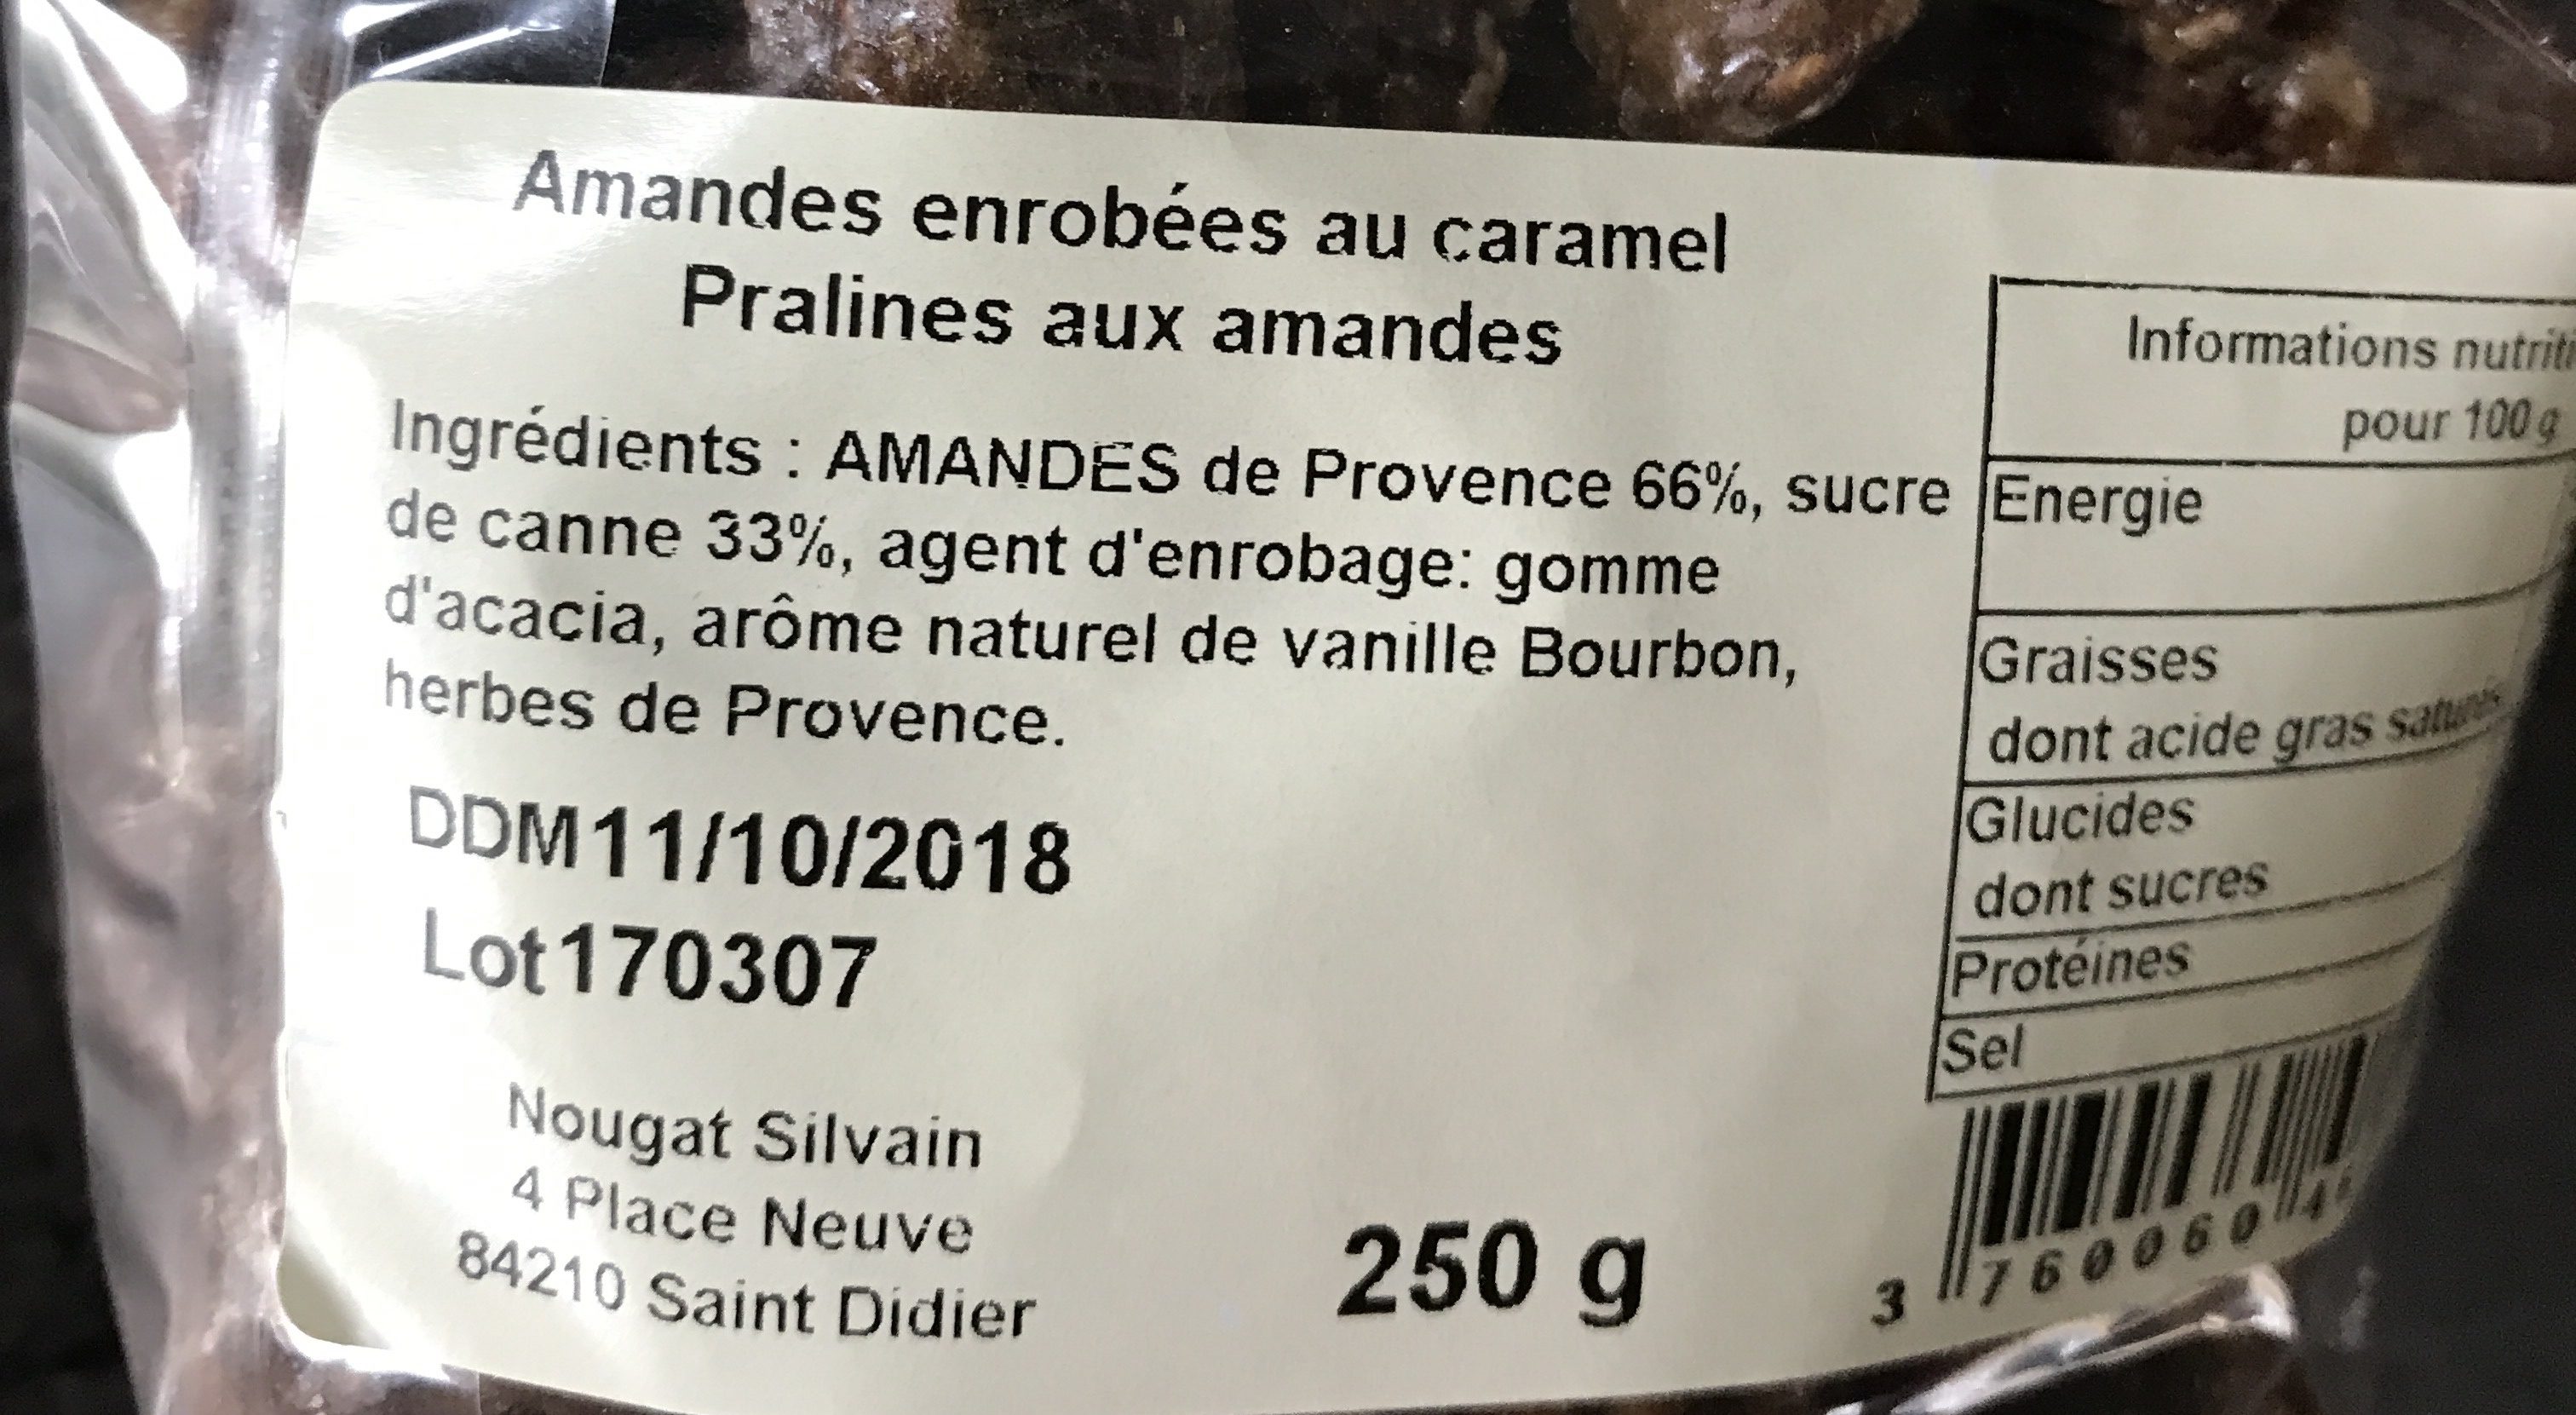 Amandes enrobées au caramel pralines aux amandes - Ingredients - fr